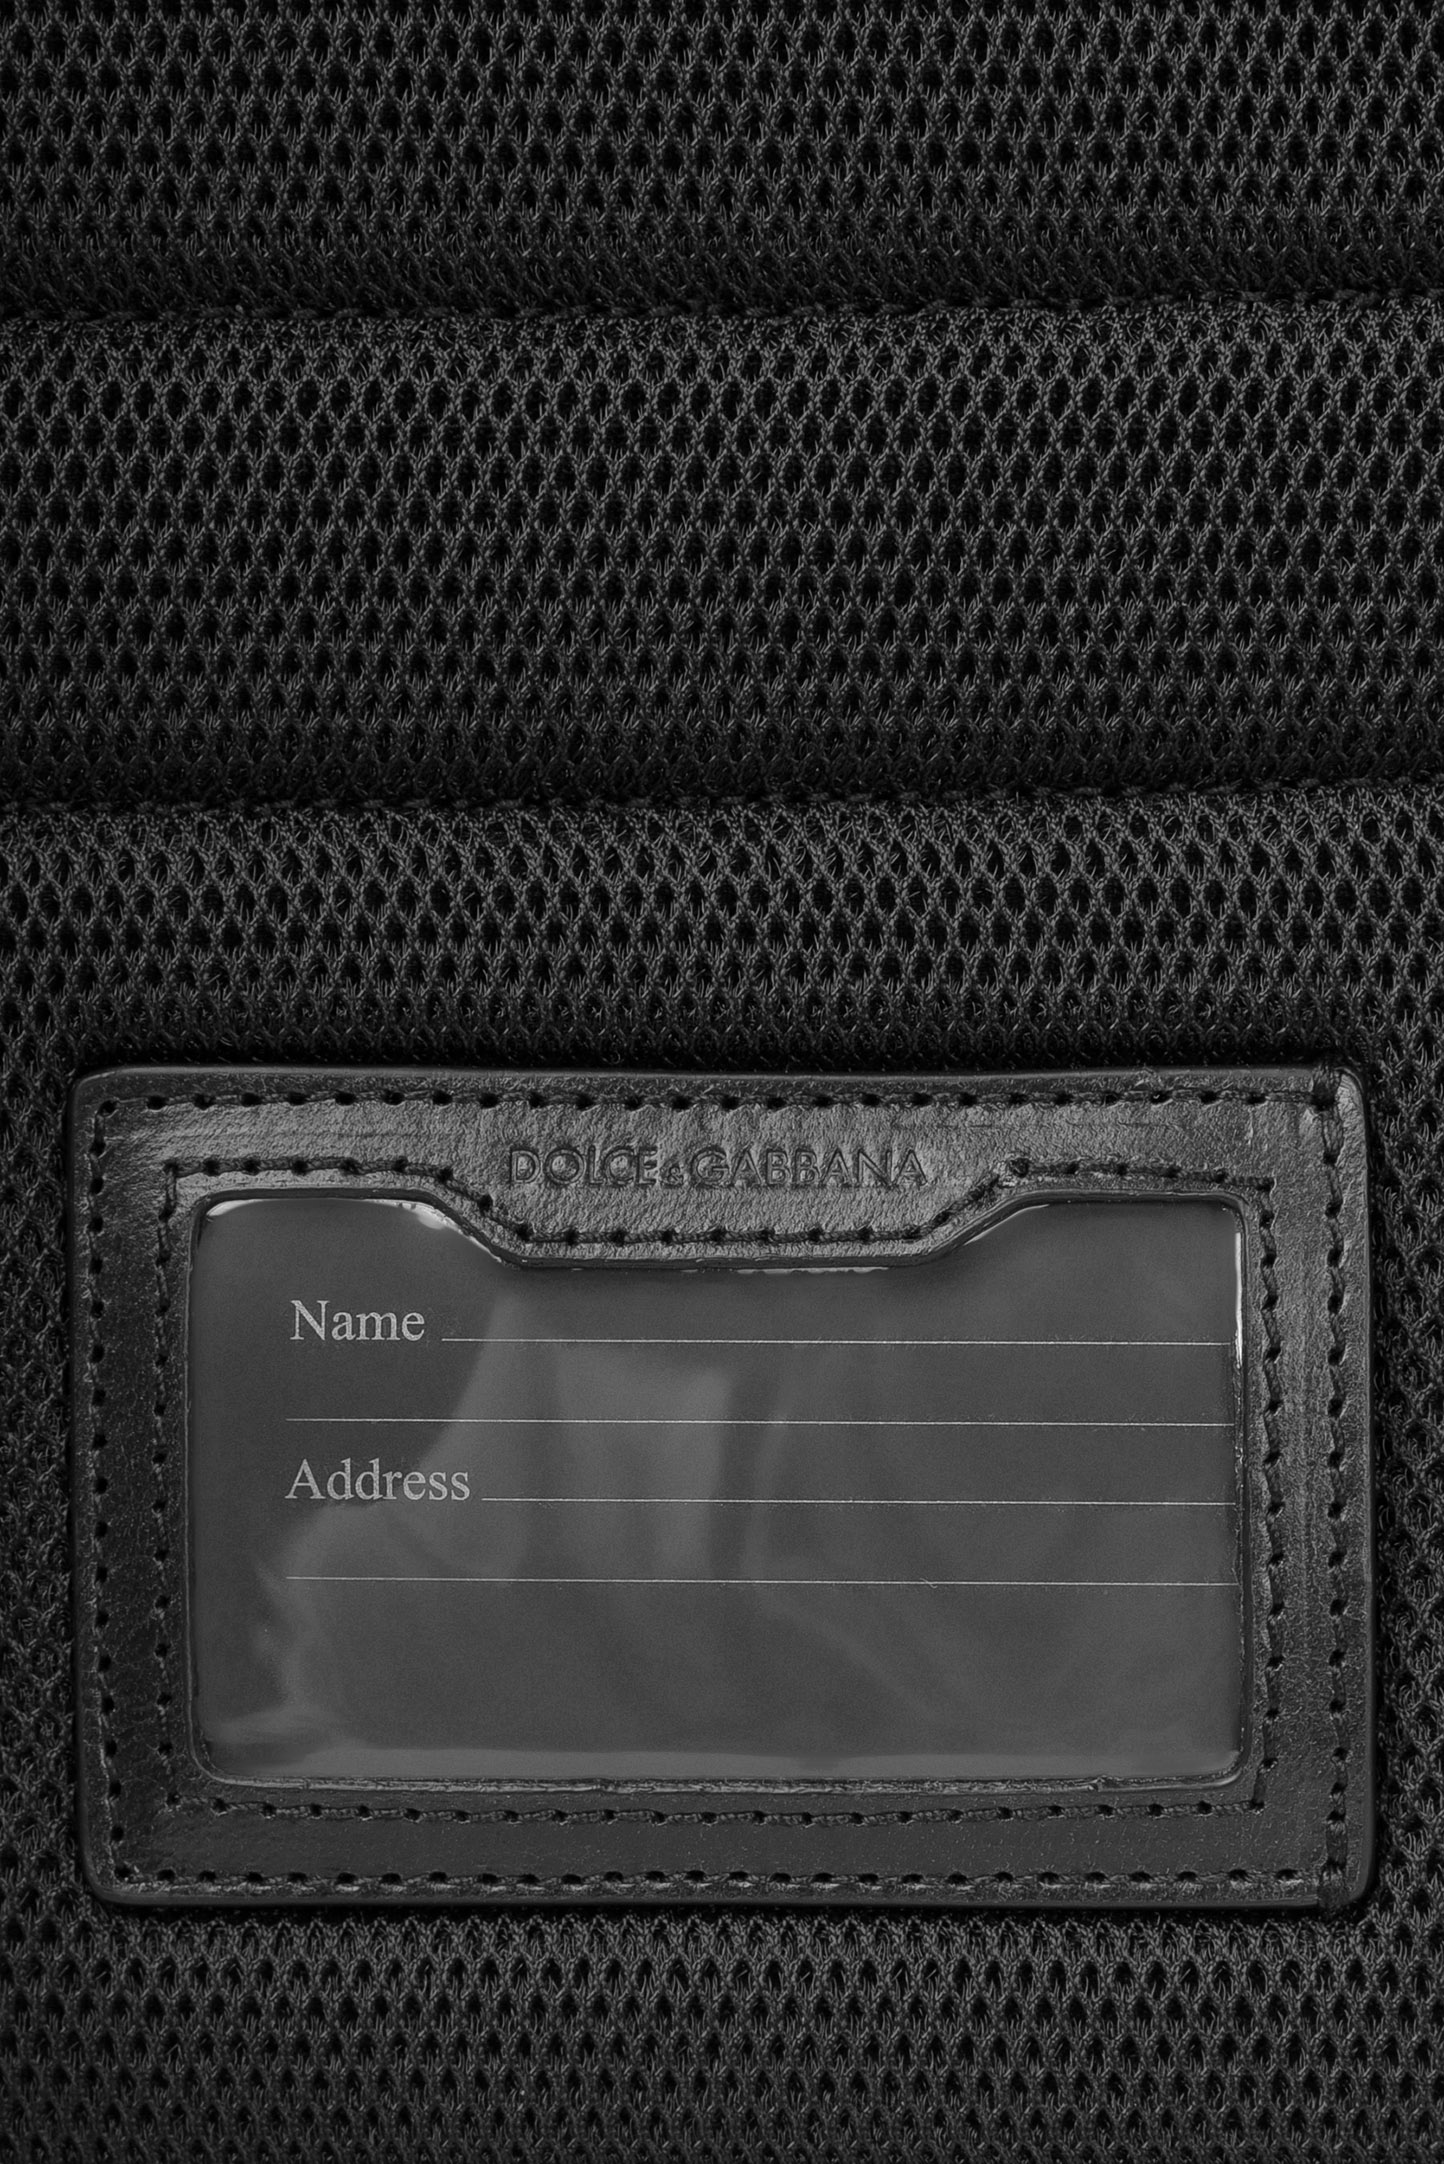 Рюкзак DOLCE & GABBANA BM1961 AO243, цвет: Черный, Мужской